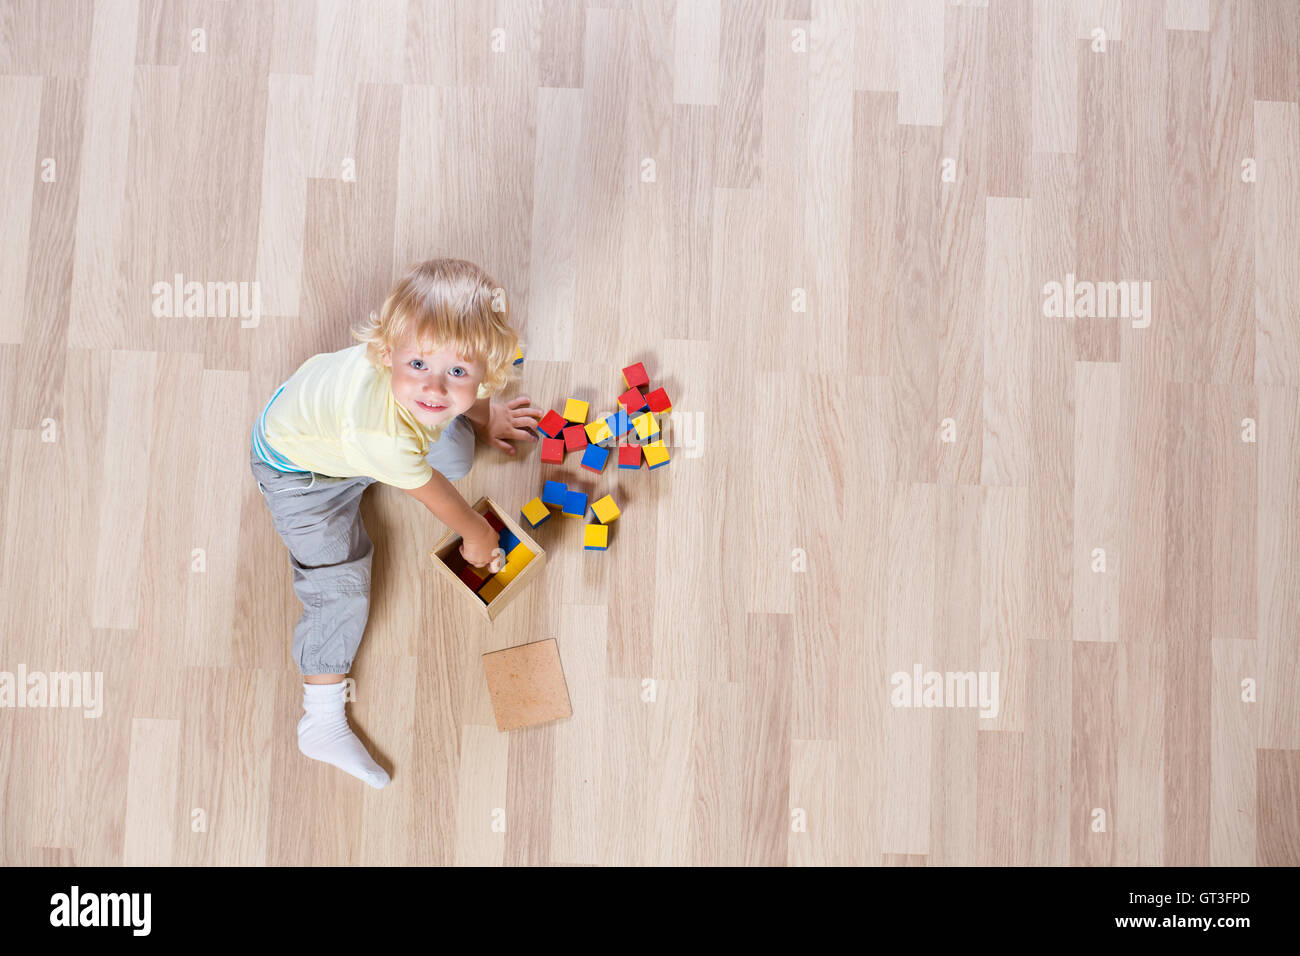 Enfant jouant avec des jouets colorés sur marbre vue supérieure Banque D'Images